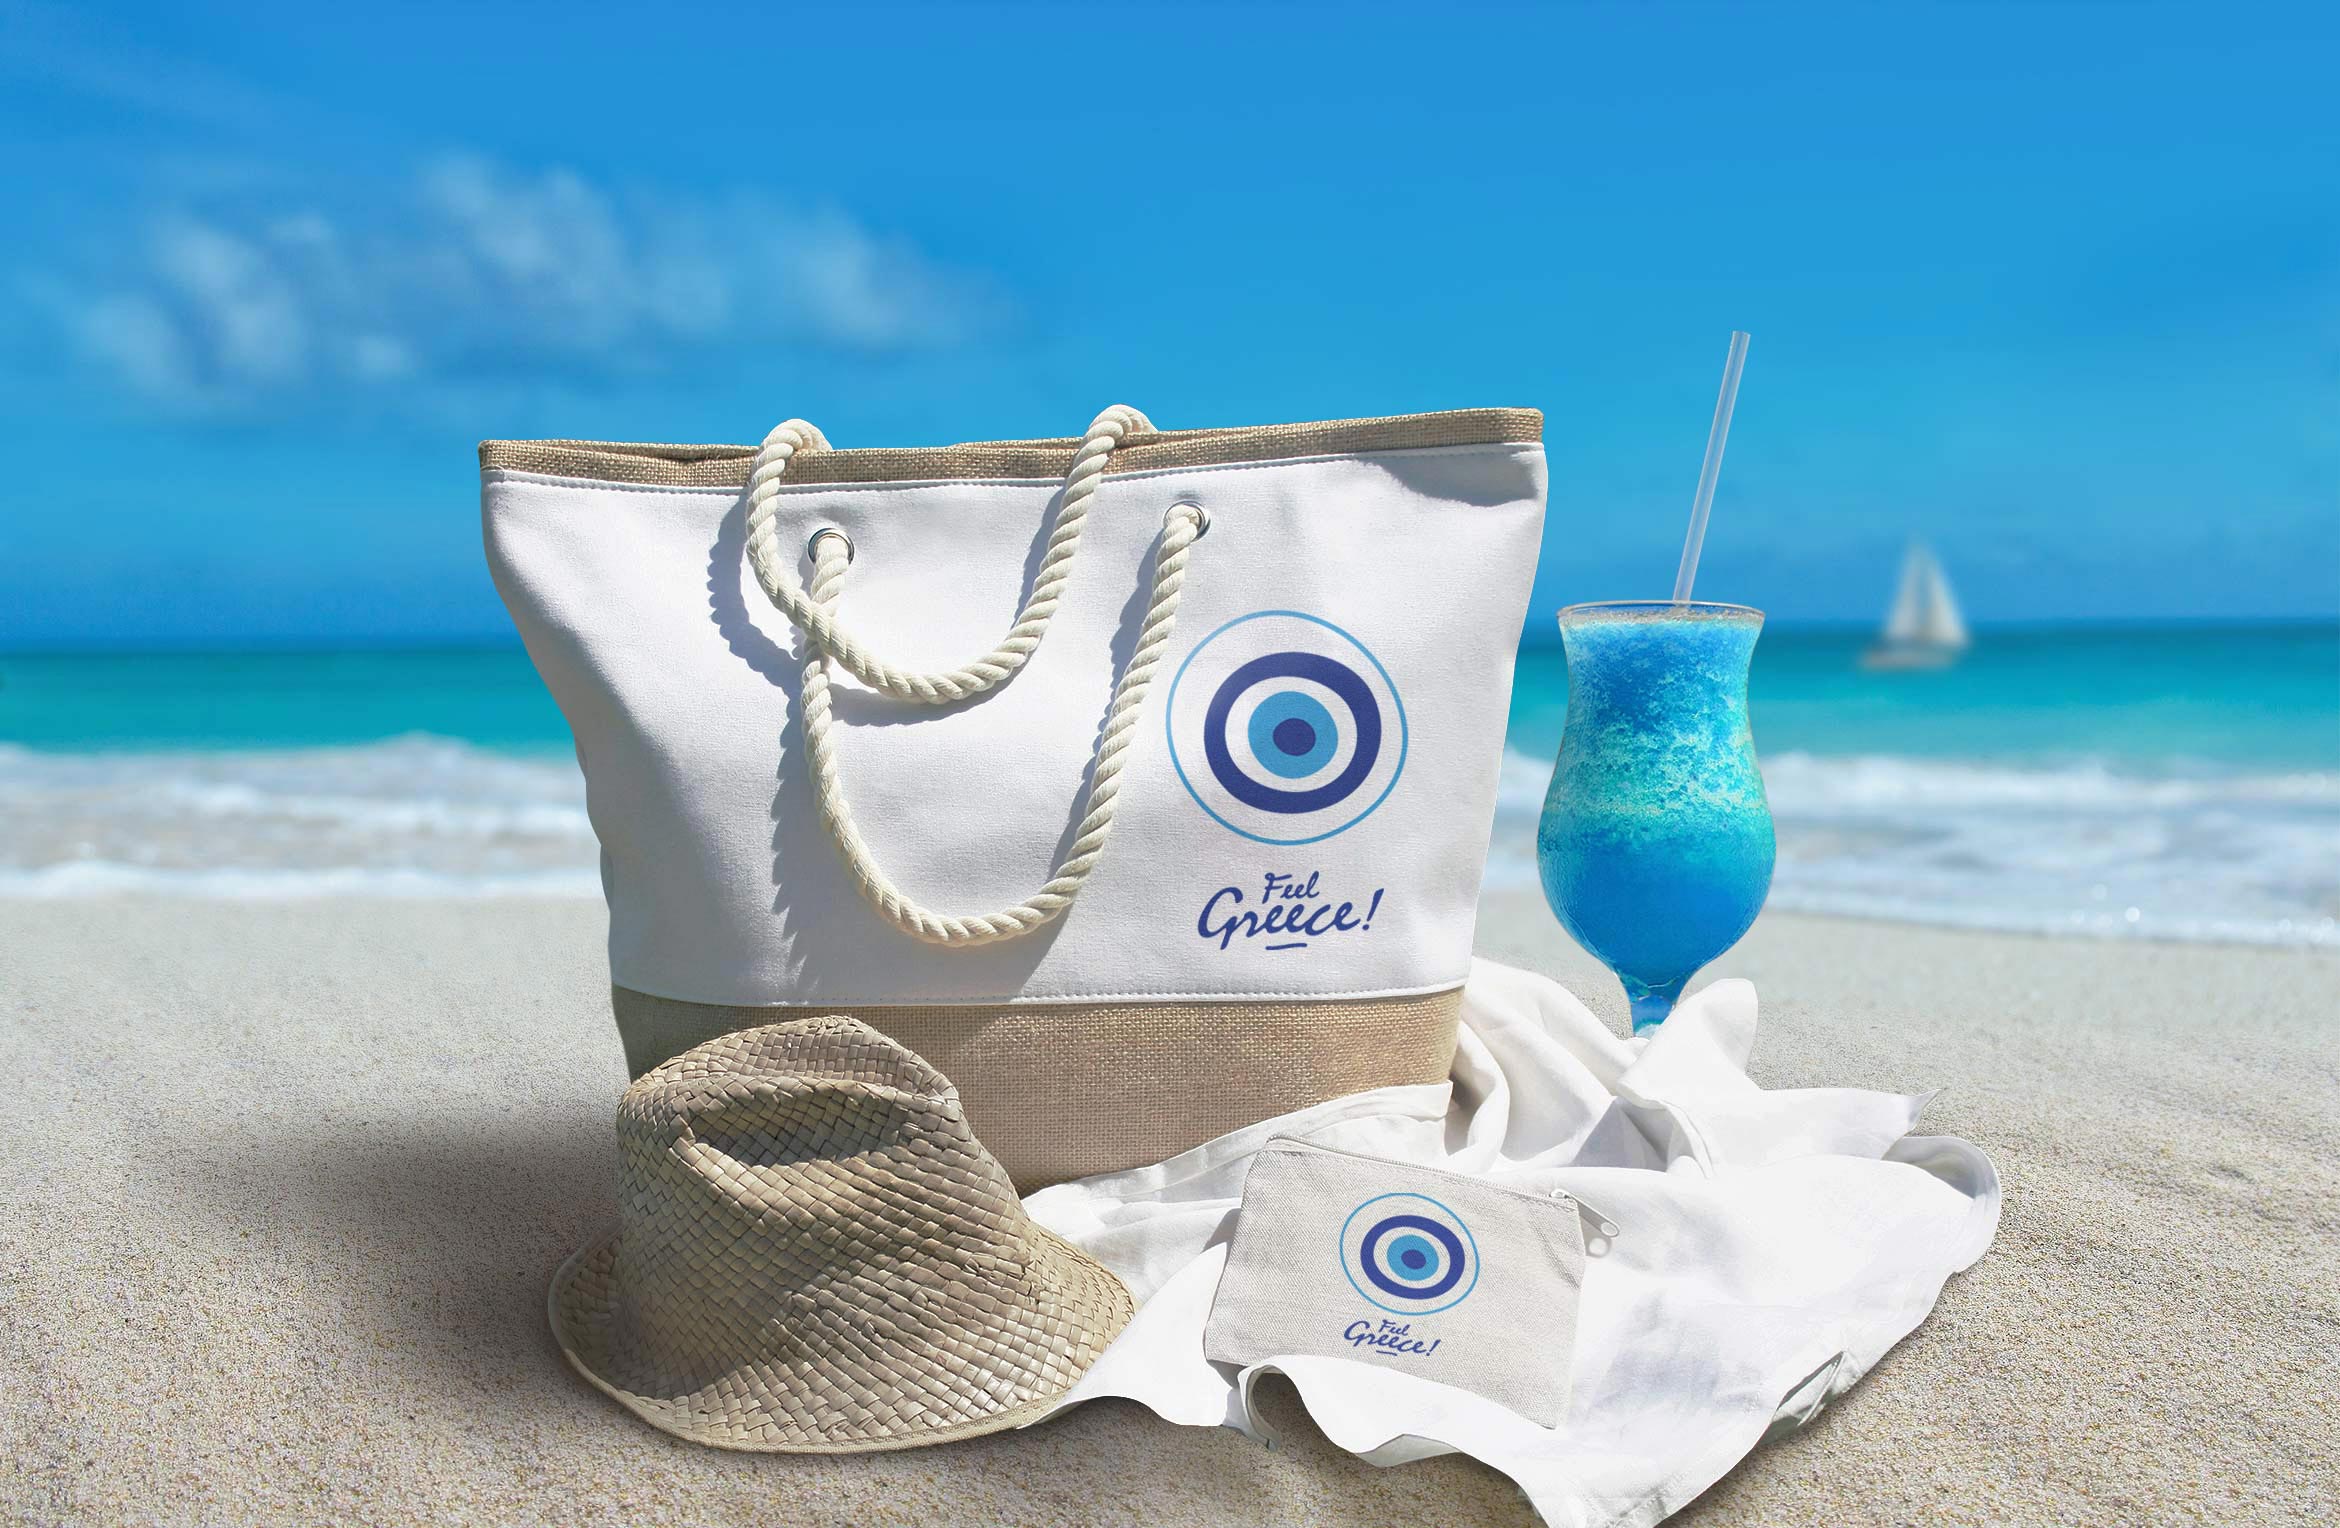 Feel Greece Beach bag